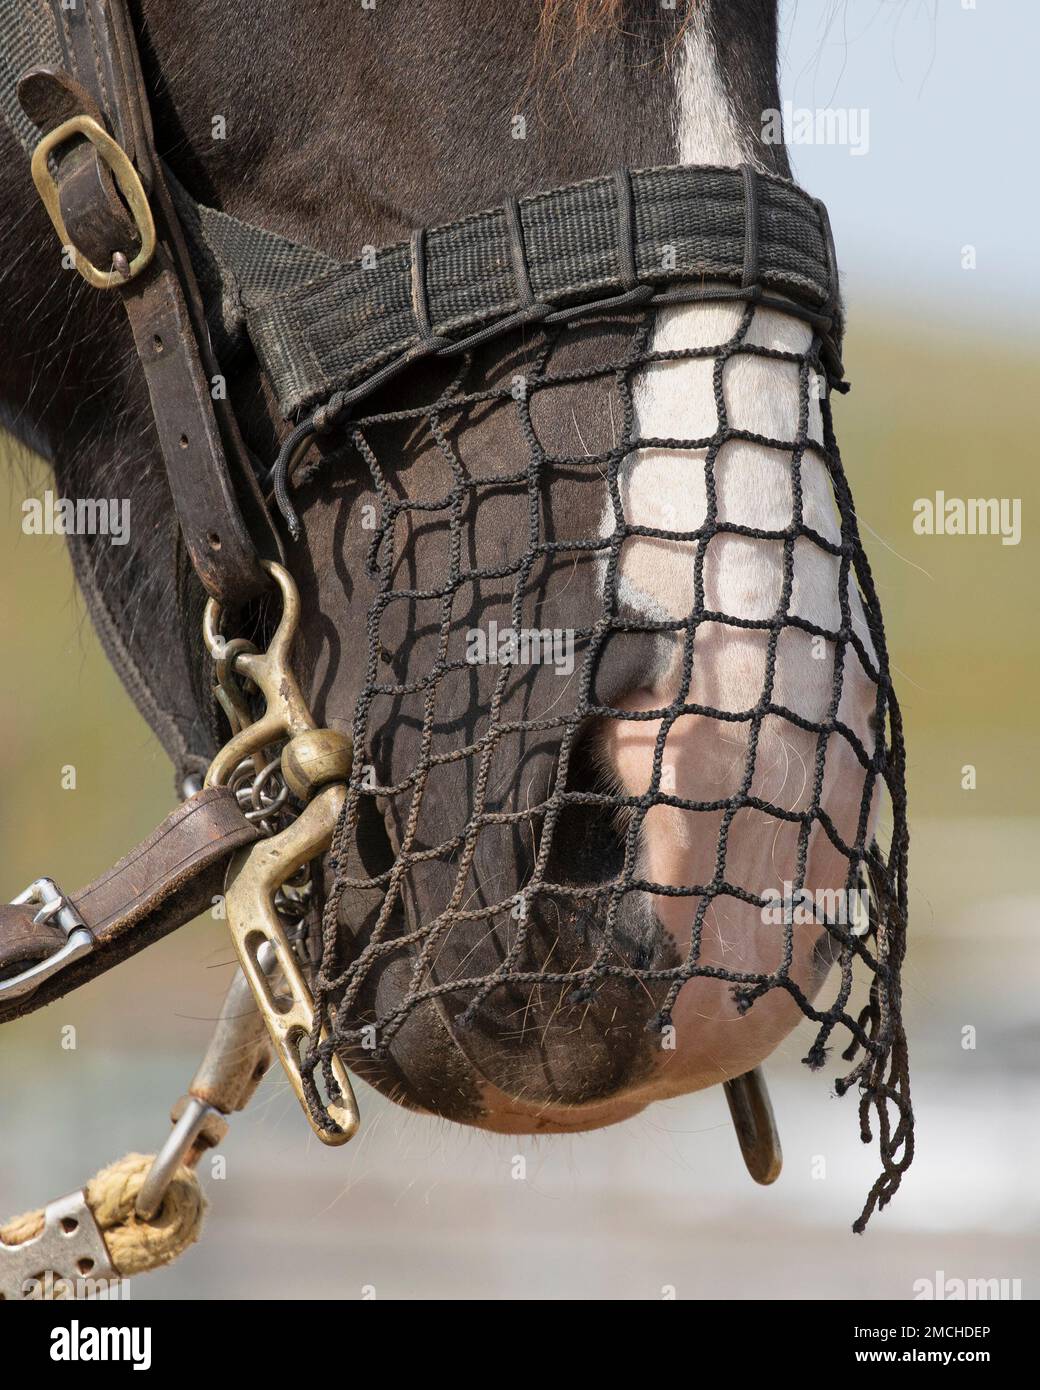 Cavallo con il naso che si annette sopra la museruola. Foto Stock